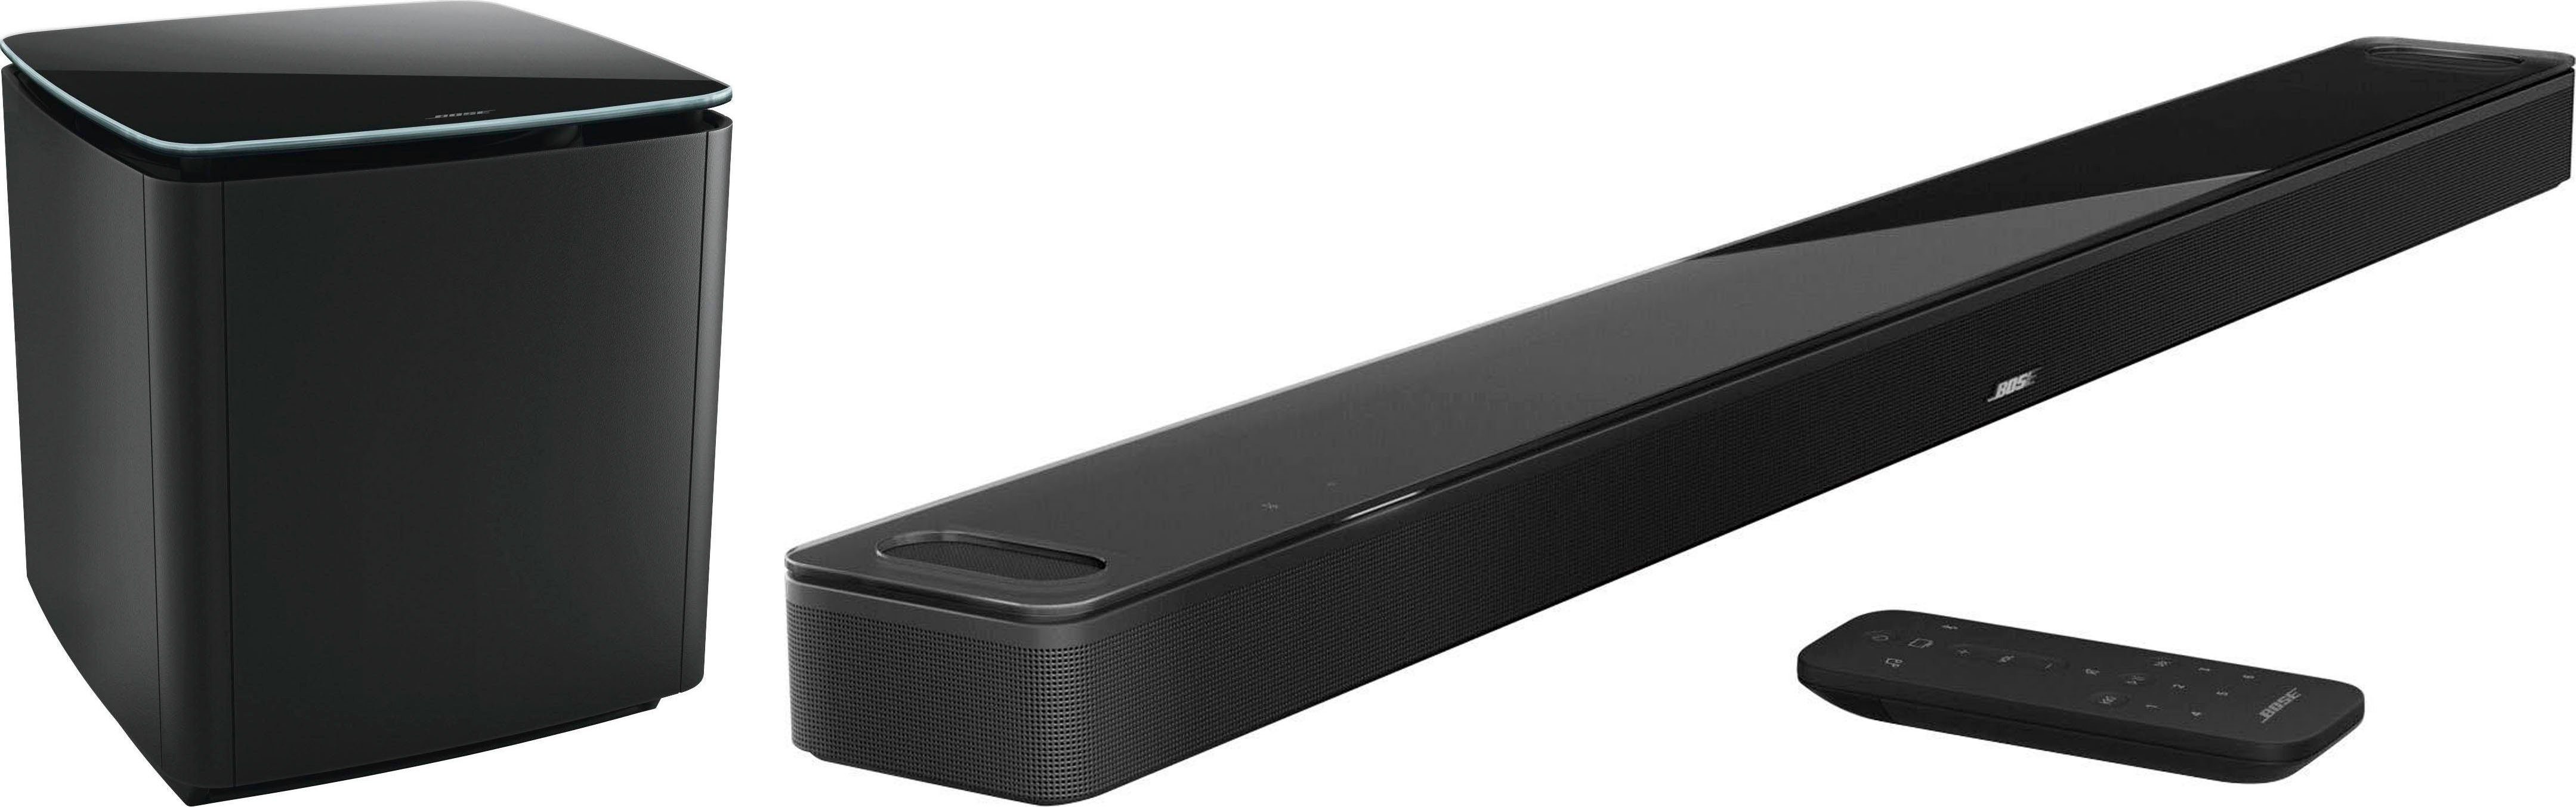 Bose Smart Ultra Soundbar + Bass Module 700 5.1 Soundsystem (Bluetooth, Multiroom, WLAN) schwarz